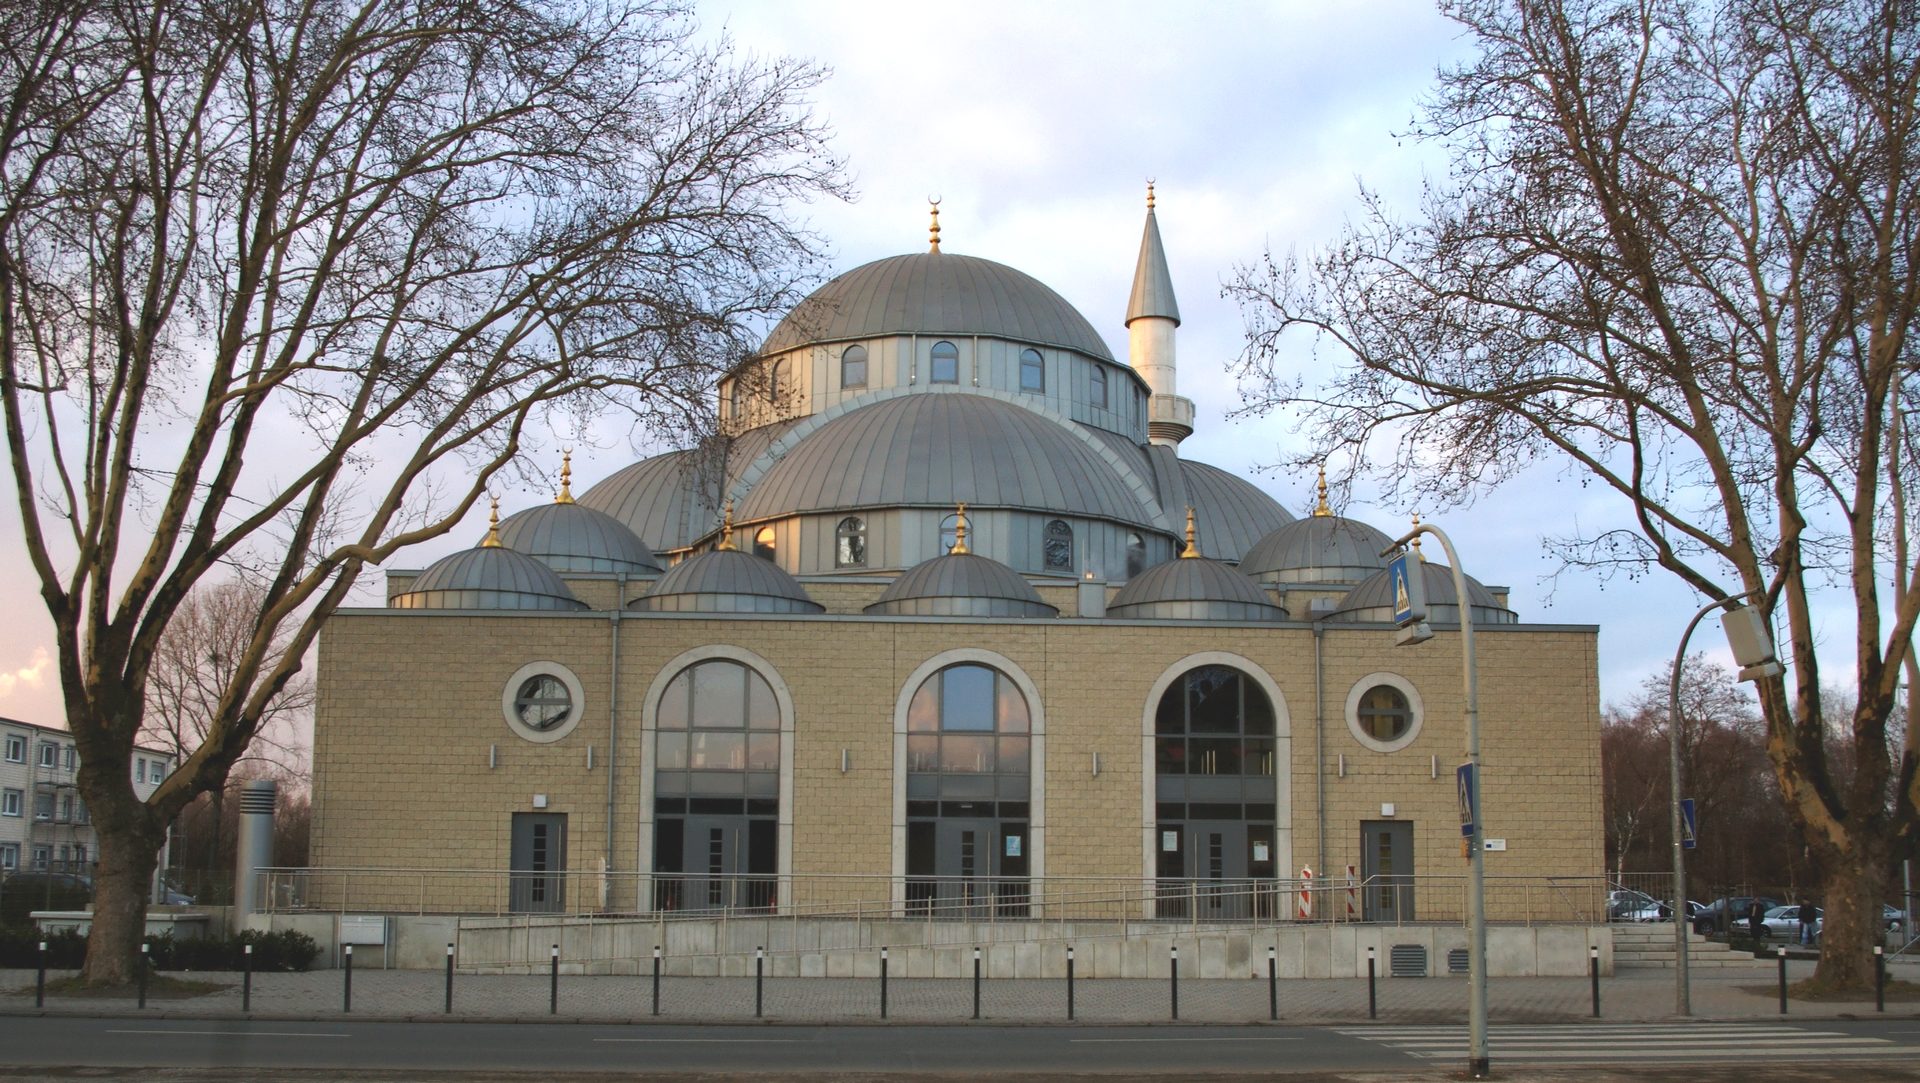 La mosquée de Duisburg, en Allemagne | wikimedia commons, ani, CC BY-SA 3.0